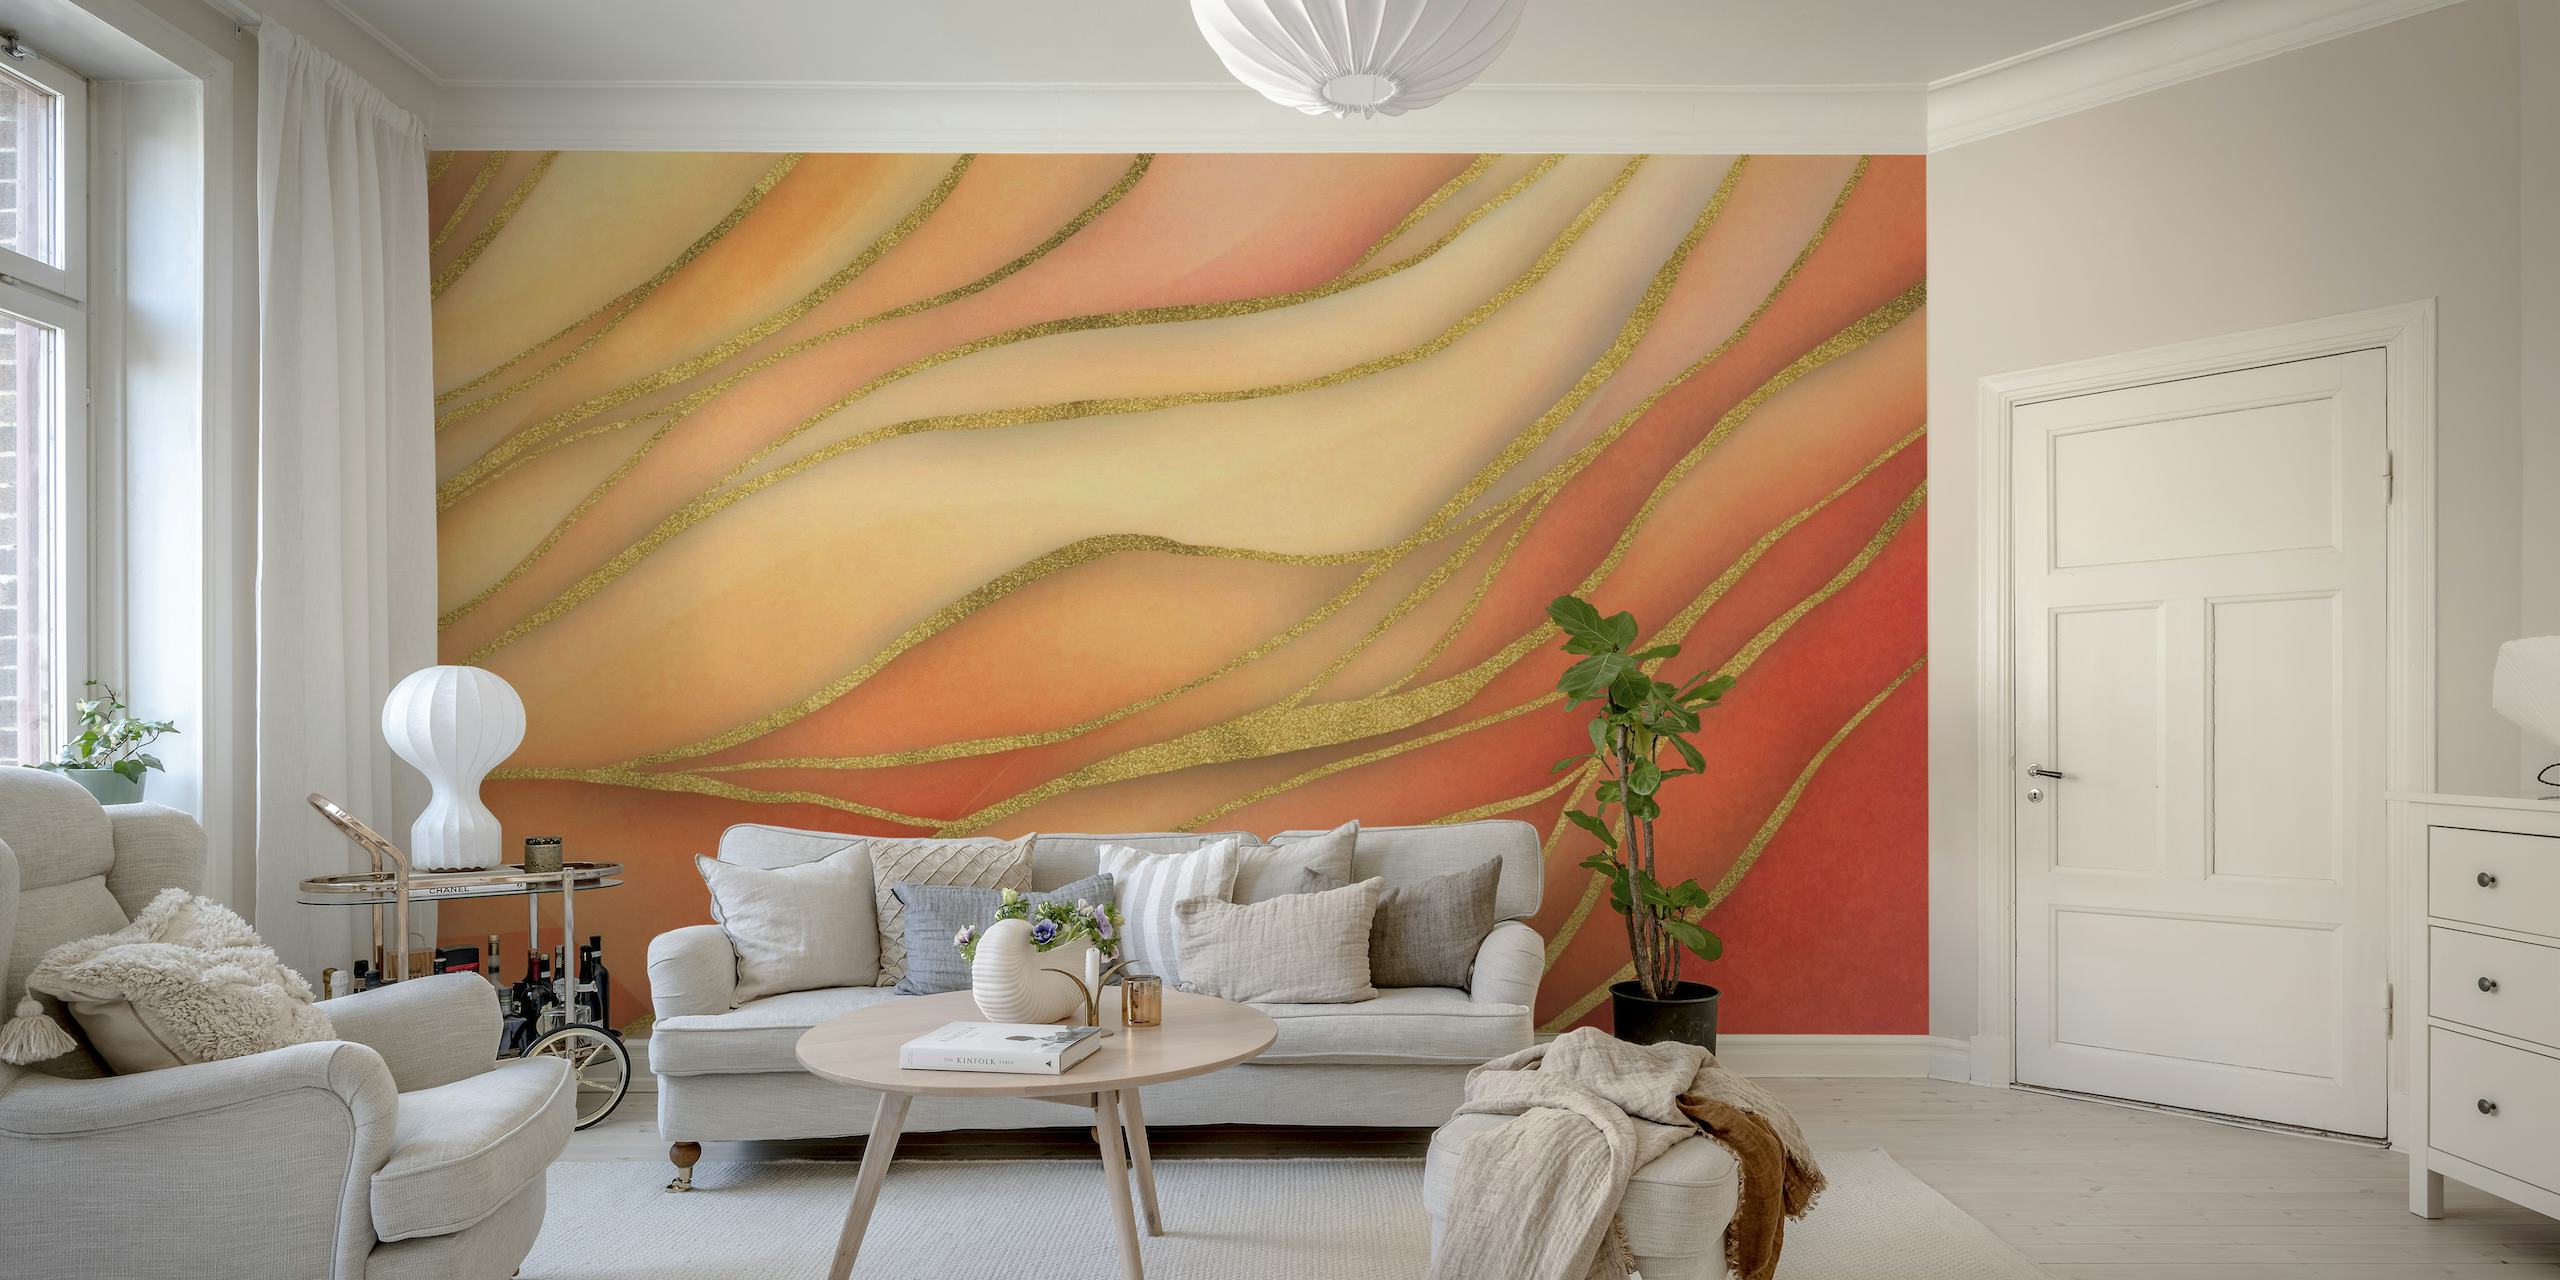 Abstrakt bløde akvarelbølger vægmaleri i orange og guldtoner.